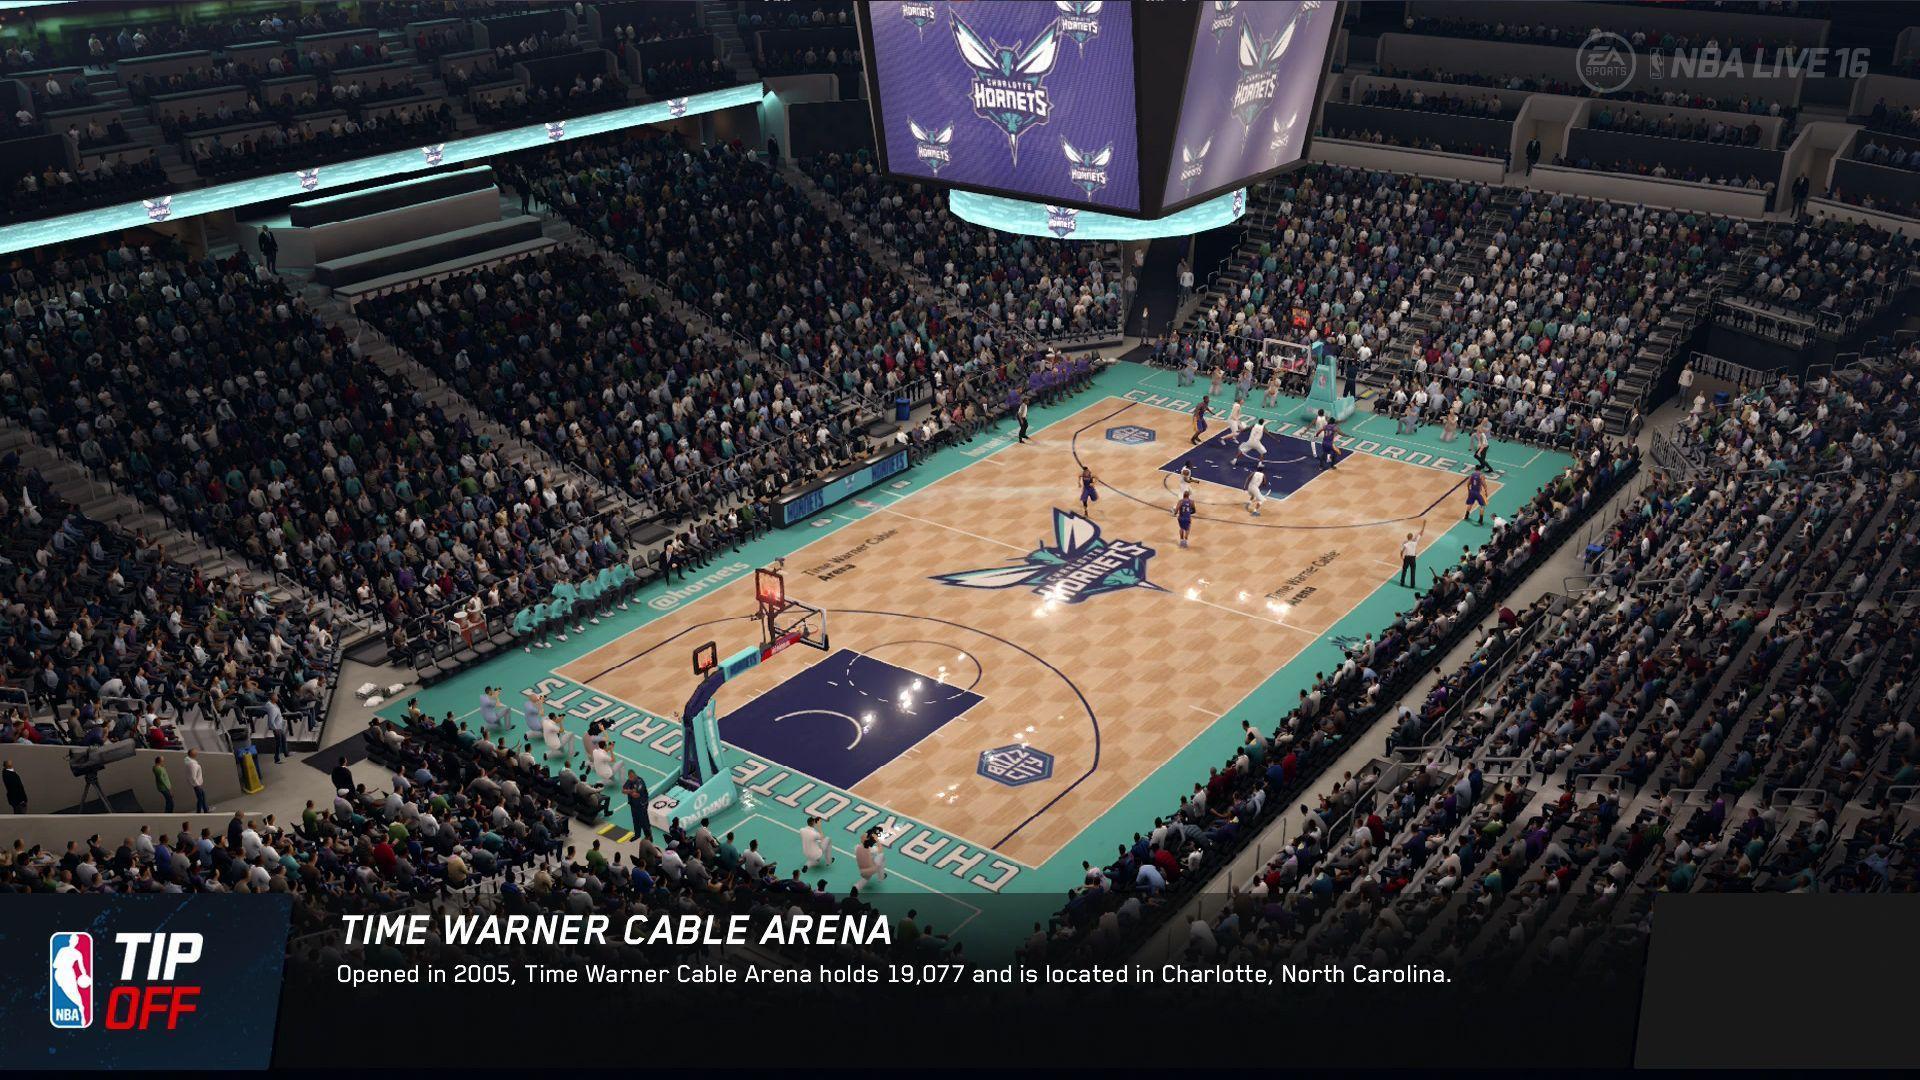 NBA LIVE 16 Arena Wallpaper